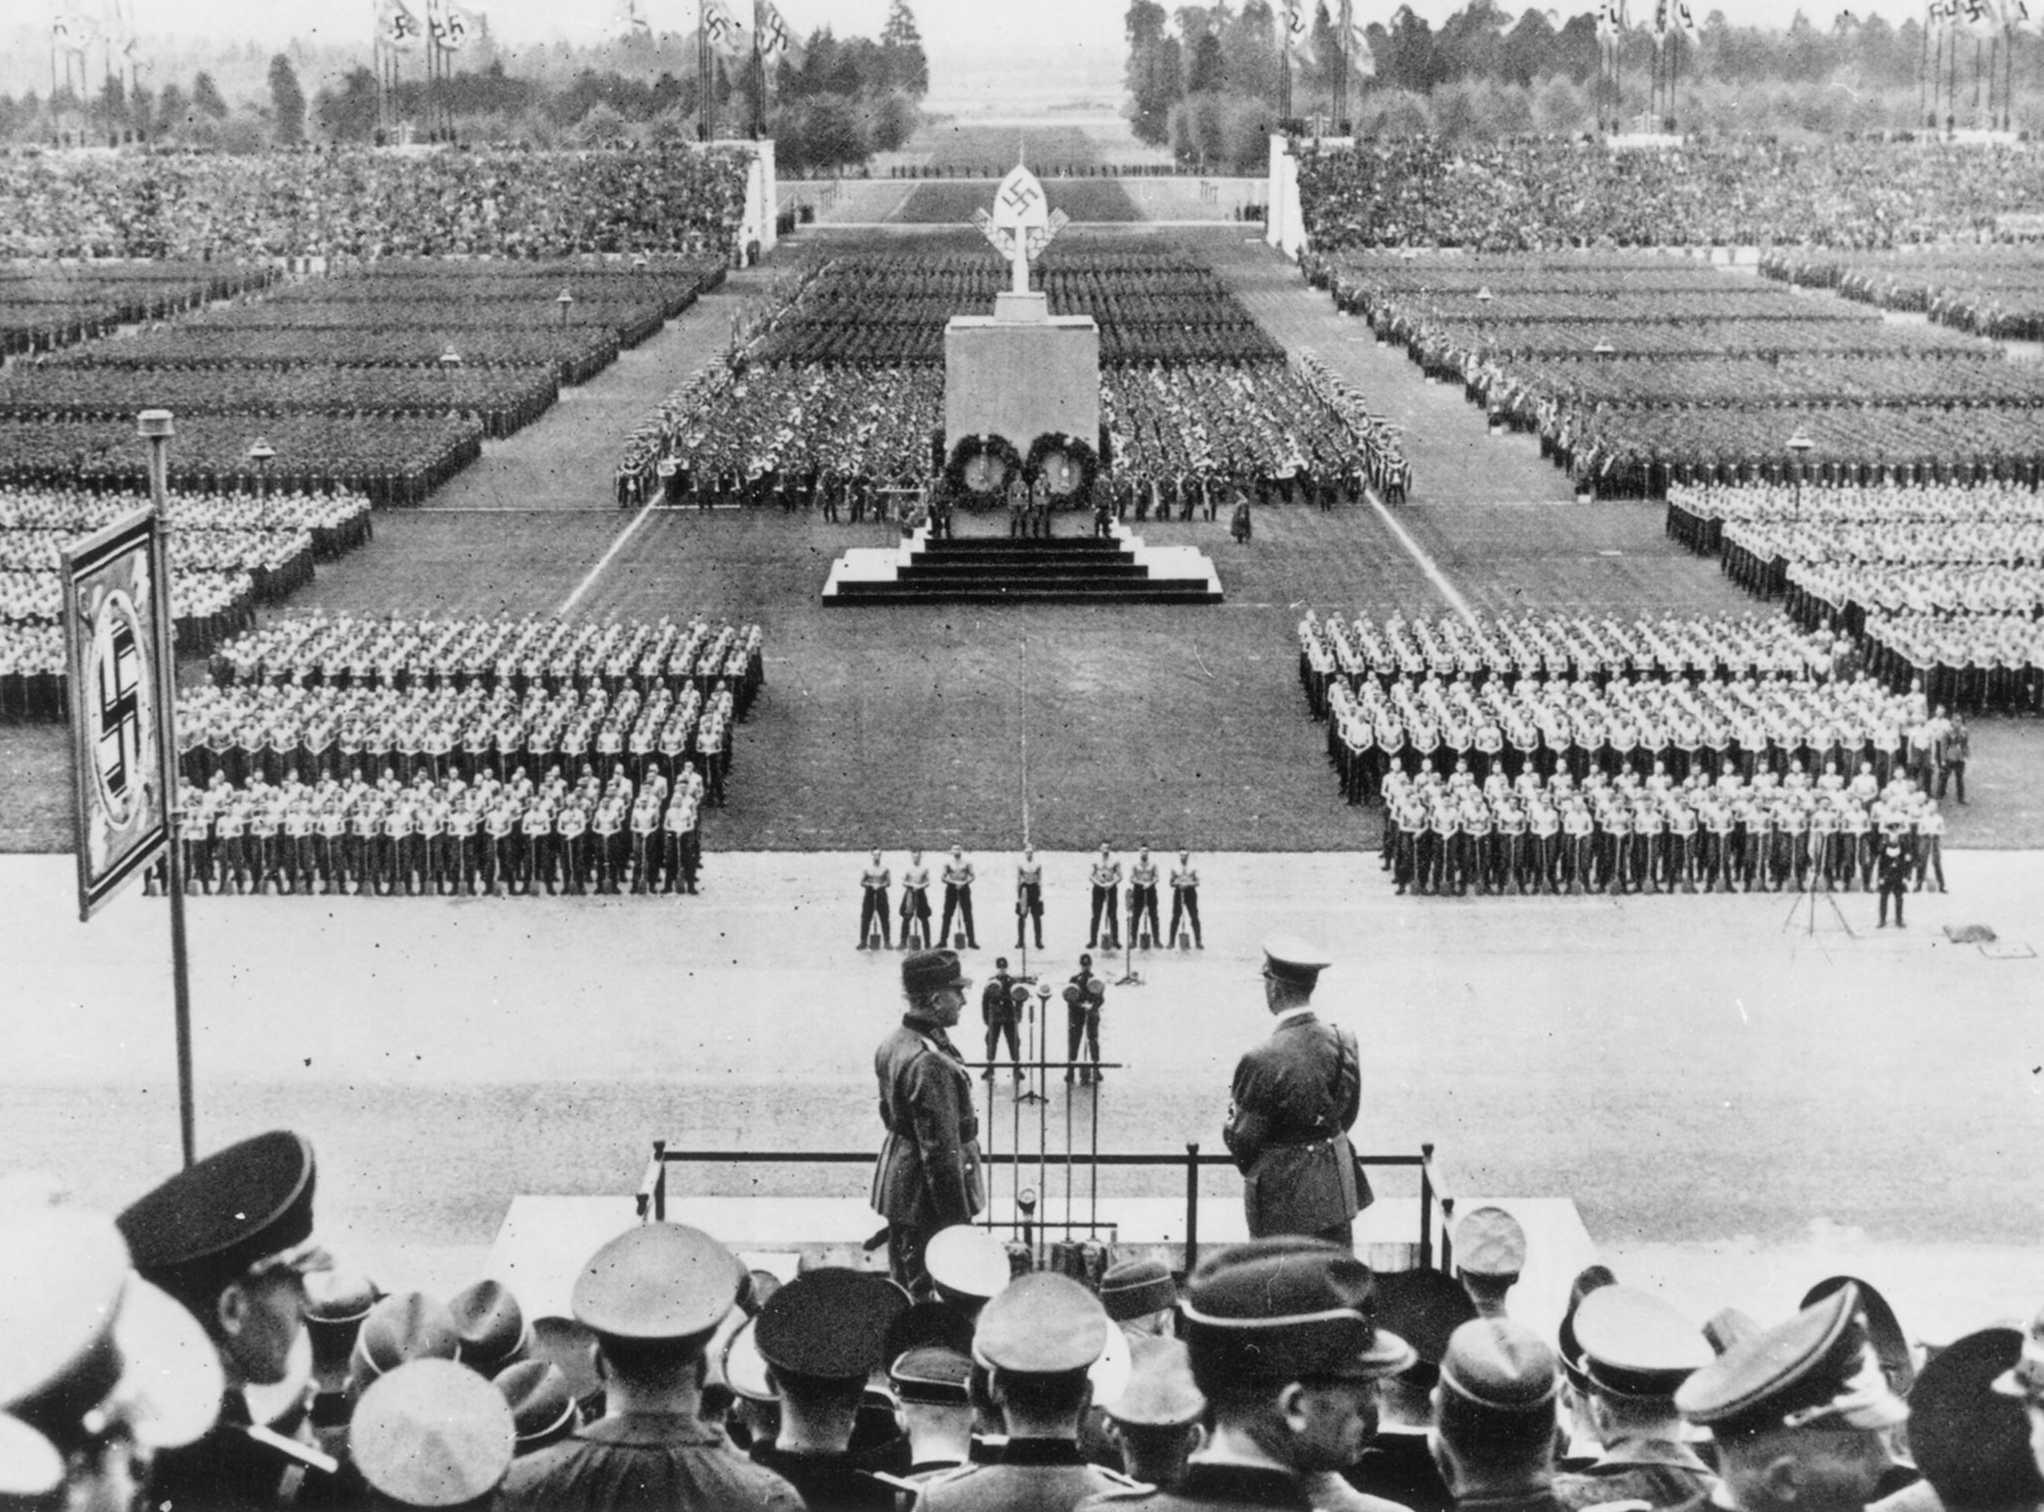 Die Abbildung zeigt eine historische Fotoaufnahme vom Appell des Reichsarbeitsdienstes auf dem Zeppelinfeld vor Adolf Hitler und Konstantin Hierl im Jahr 1938. Die Fotoaufnahme stammt vom Dokumentationszentrum Reichsparteitagsgelände und trägt die Archivnummer 397.06.